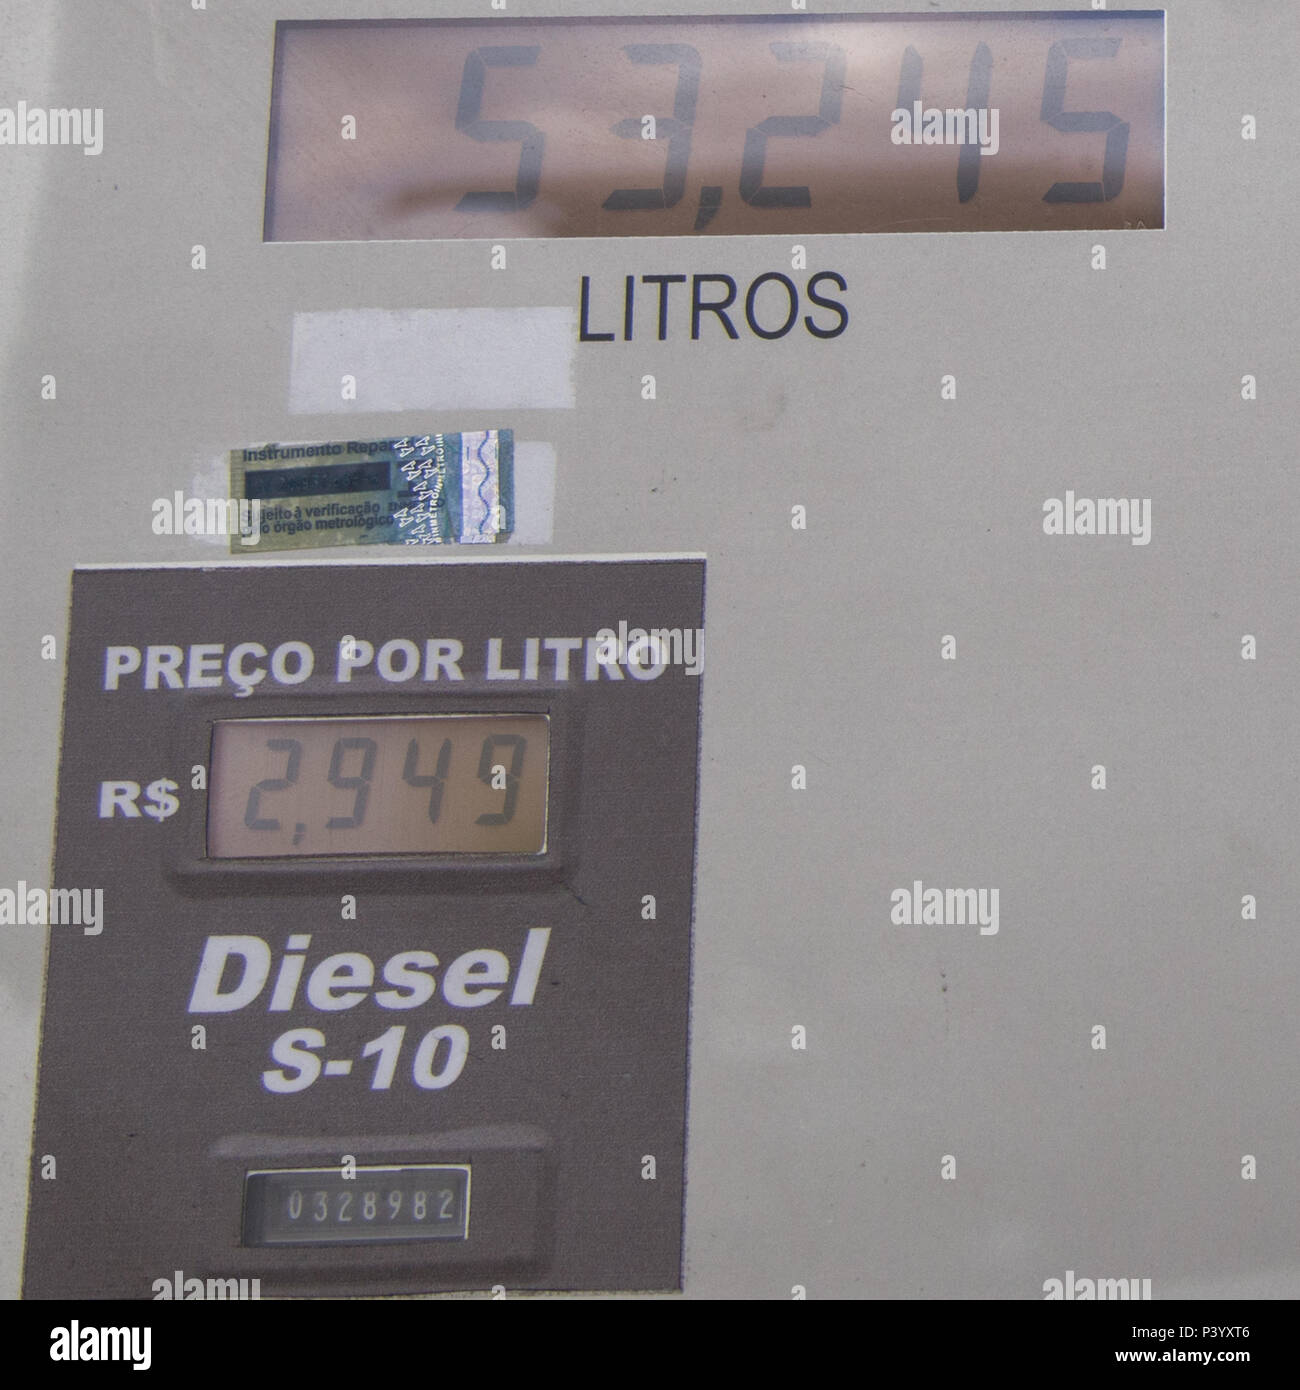 Na foto produzida nesta terça-feira (01) bomba de Diesel S-10 em posto de gasolina de São Paulo (SP). Stock Photo